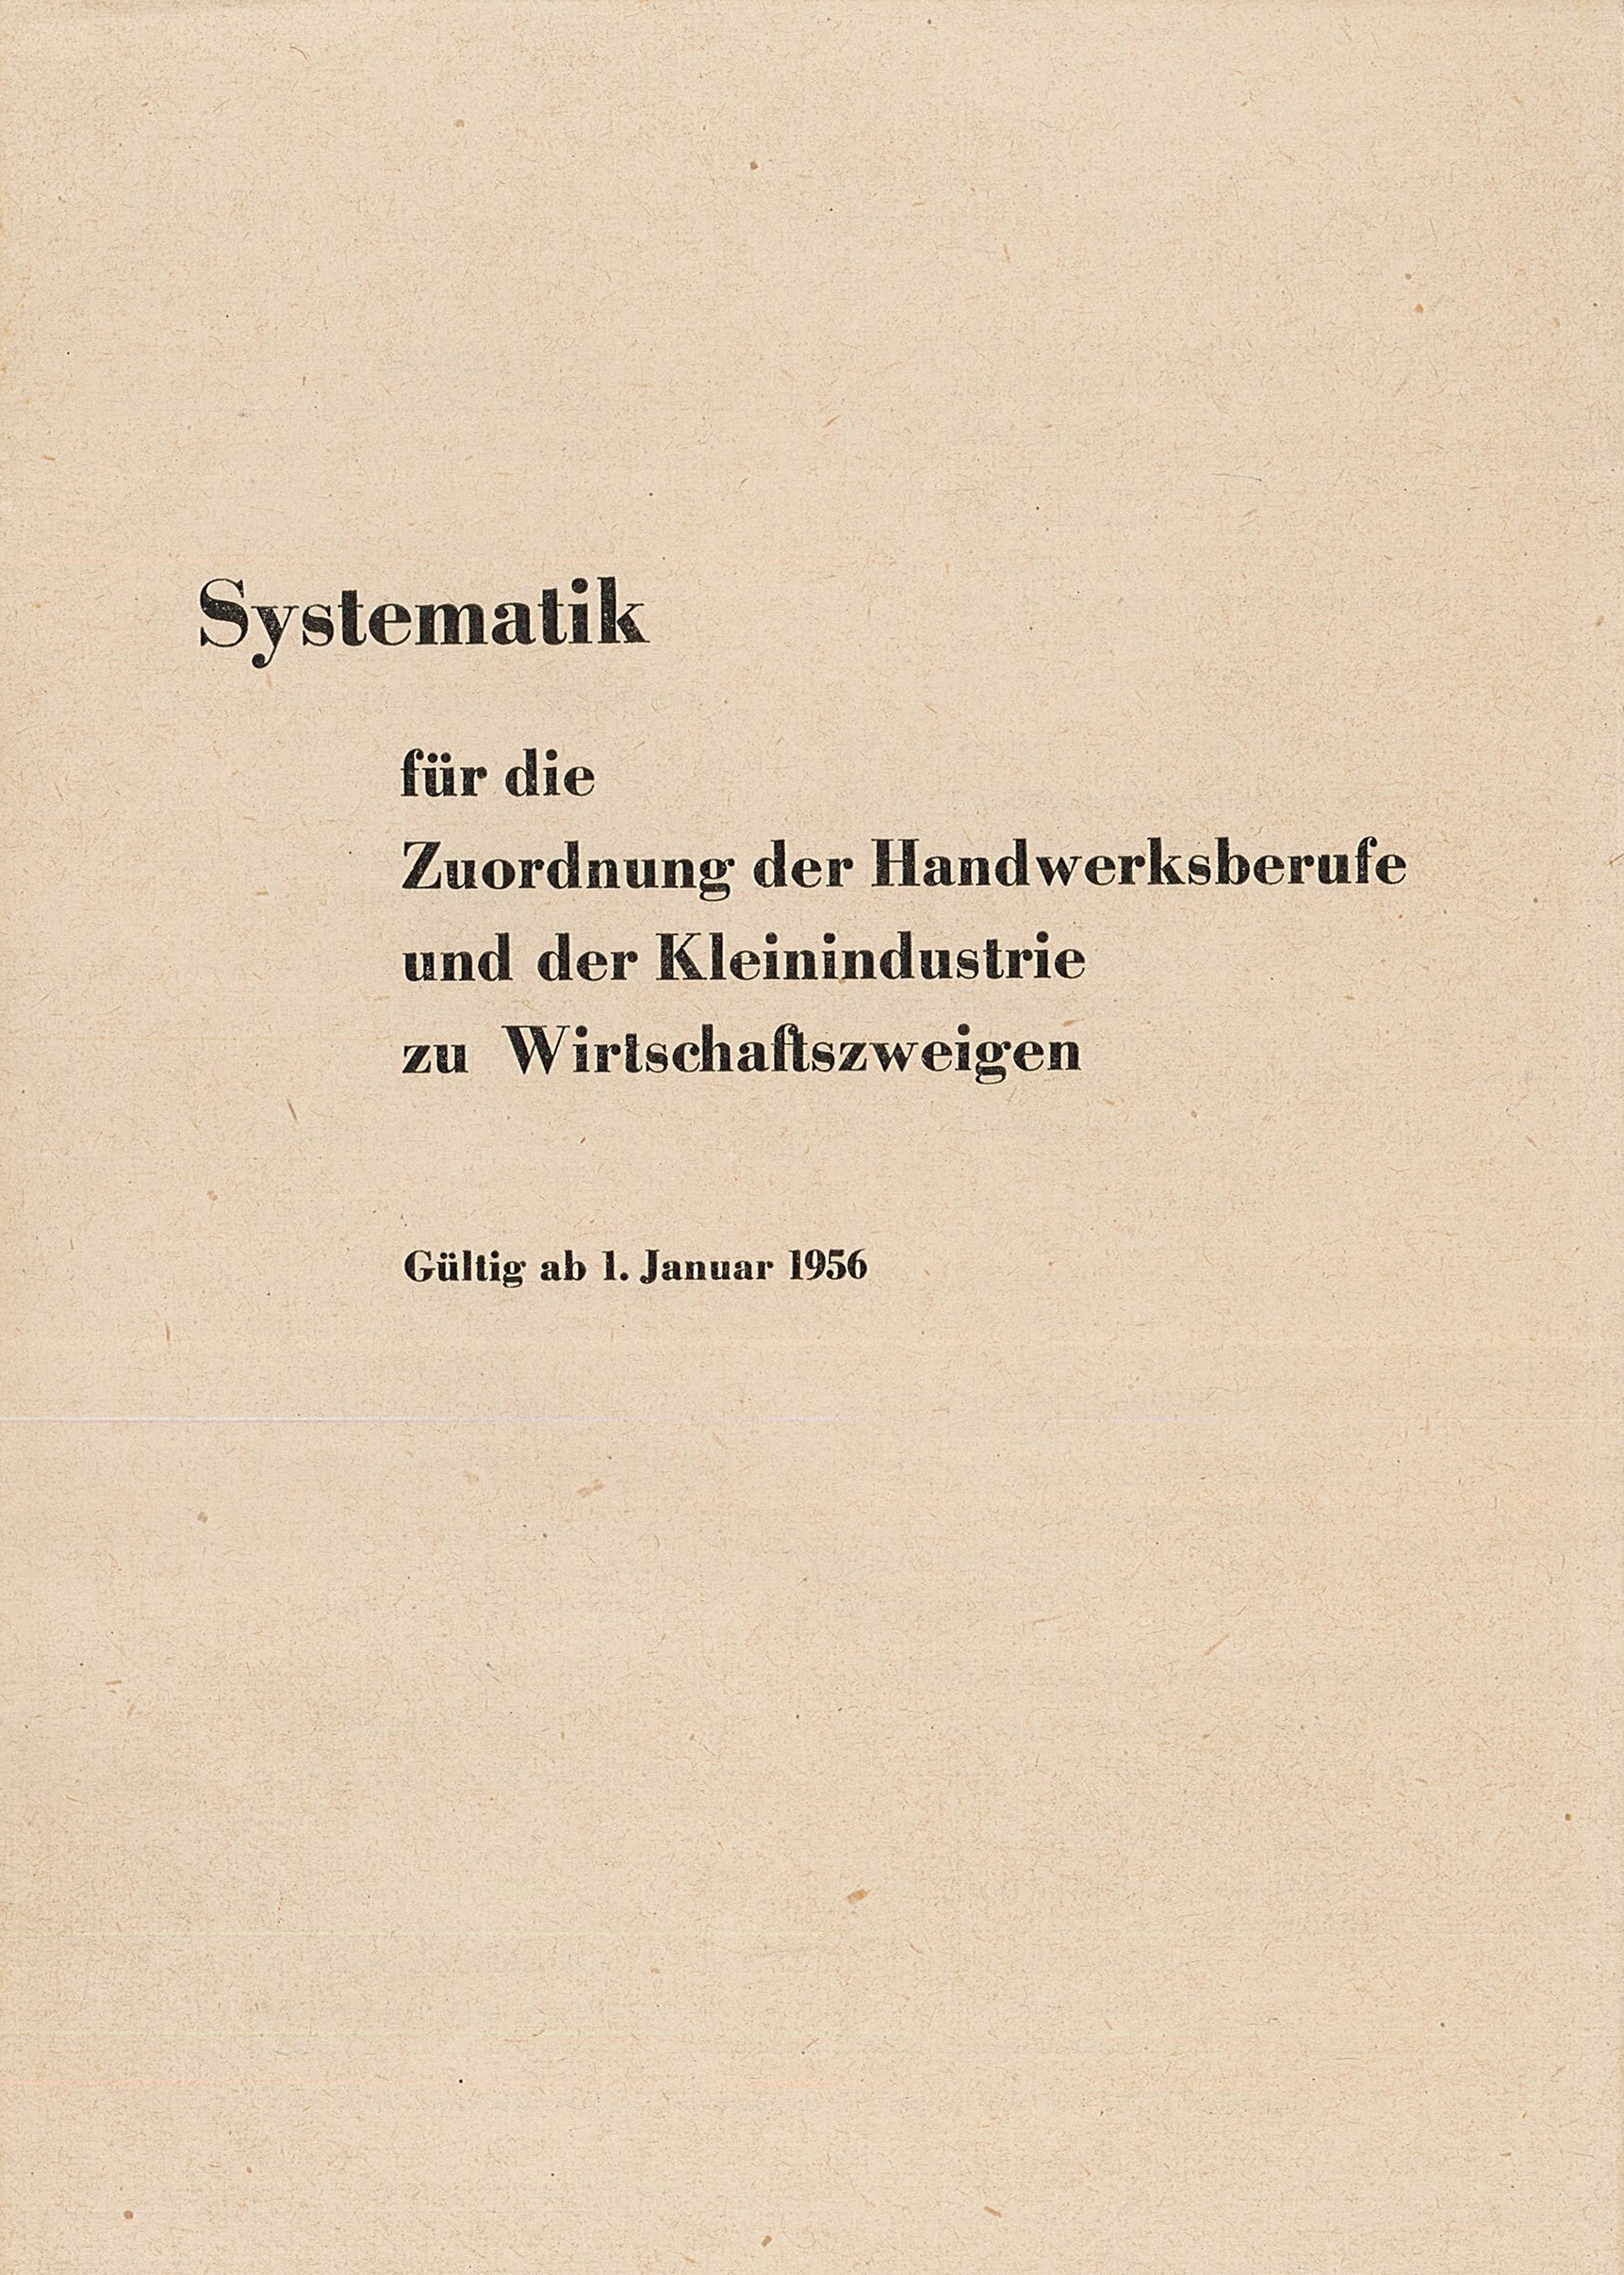 Lehrmaterial zum Handwerkerlehrjahr - II. Abschnitt (Museum Wolmirstedt RR-F)